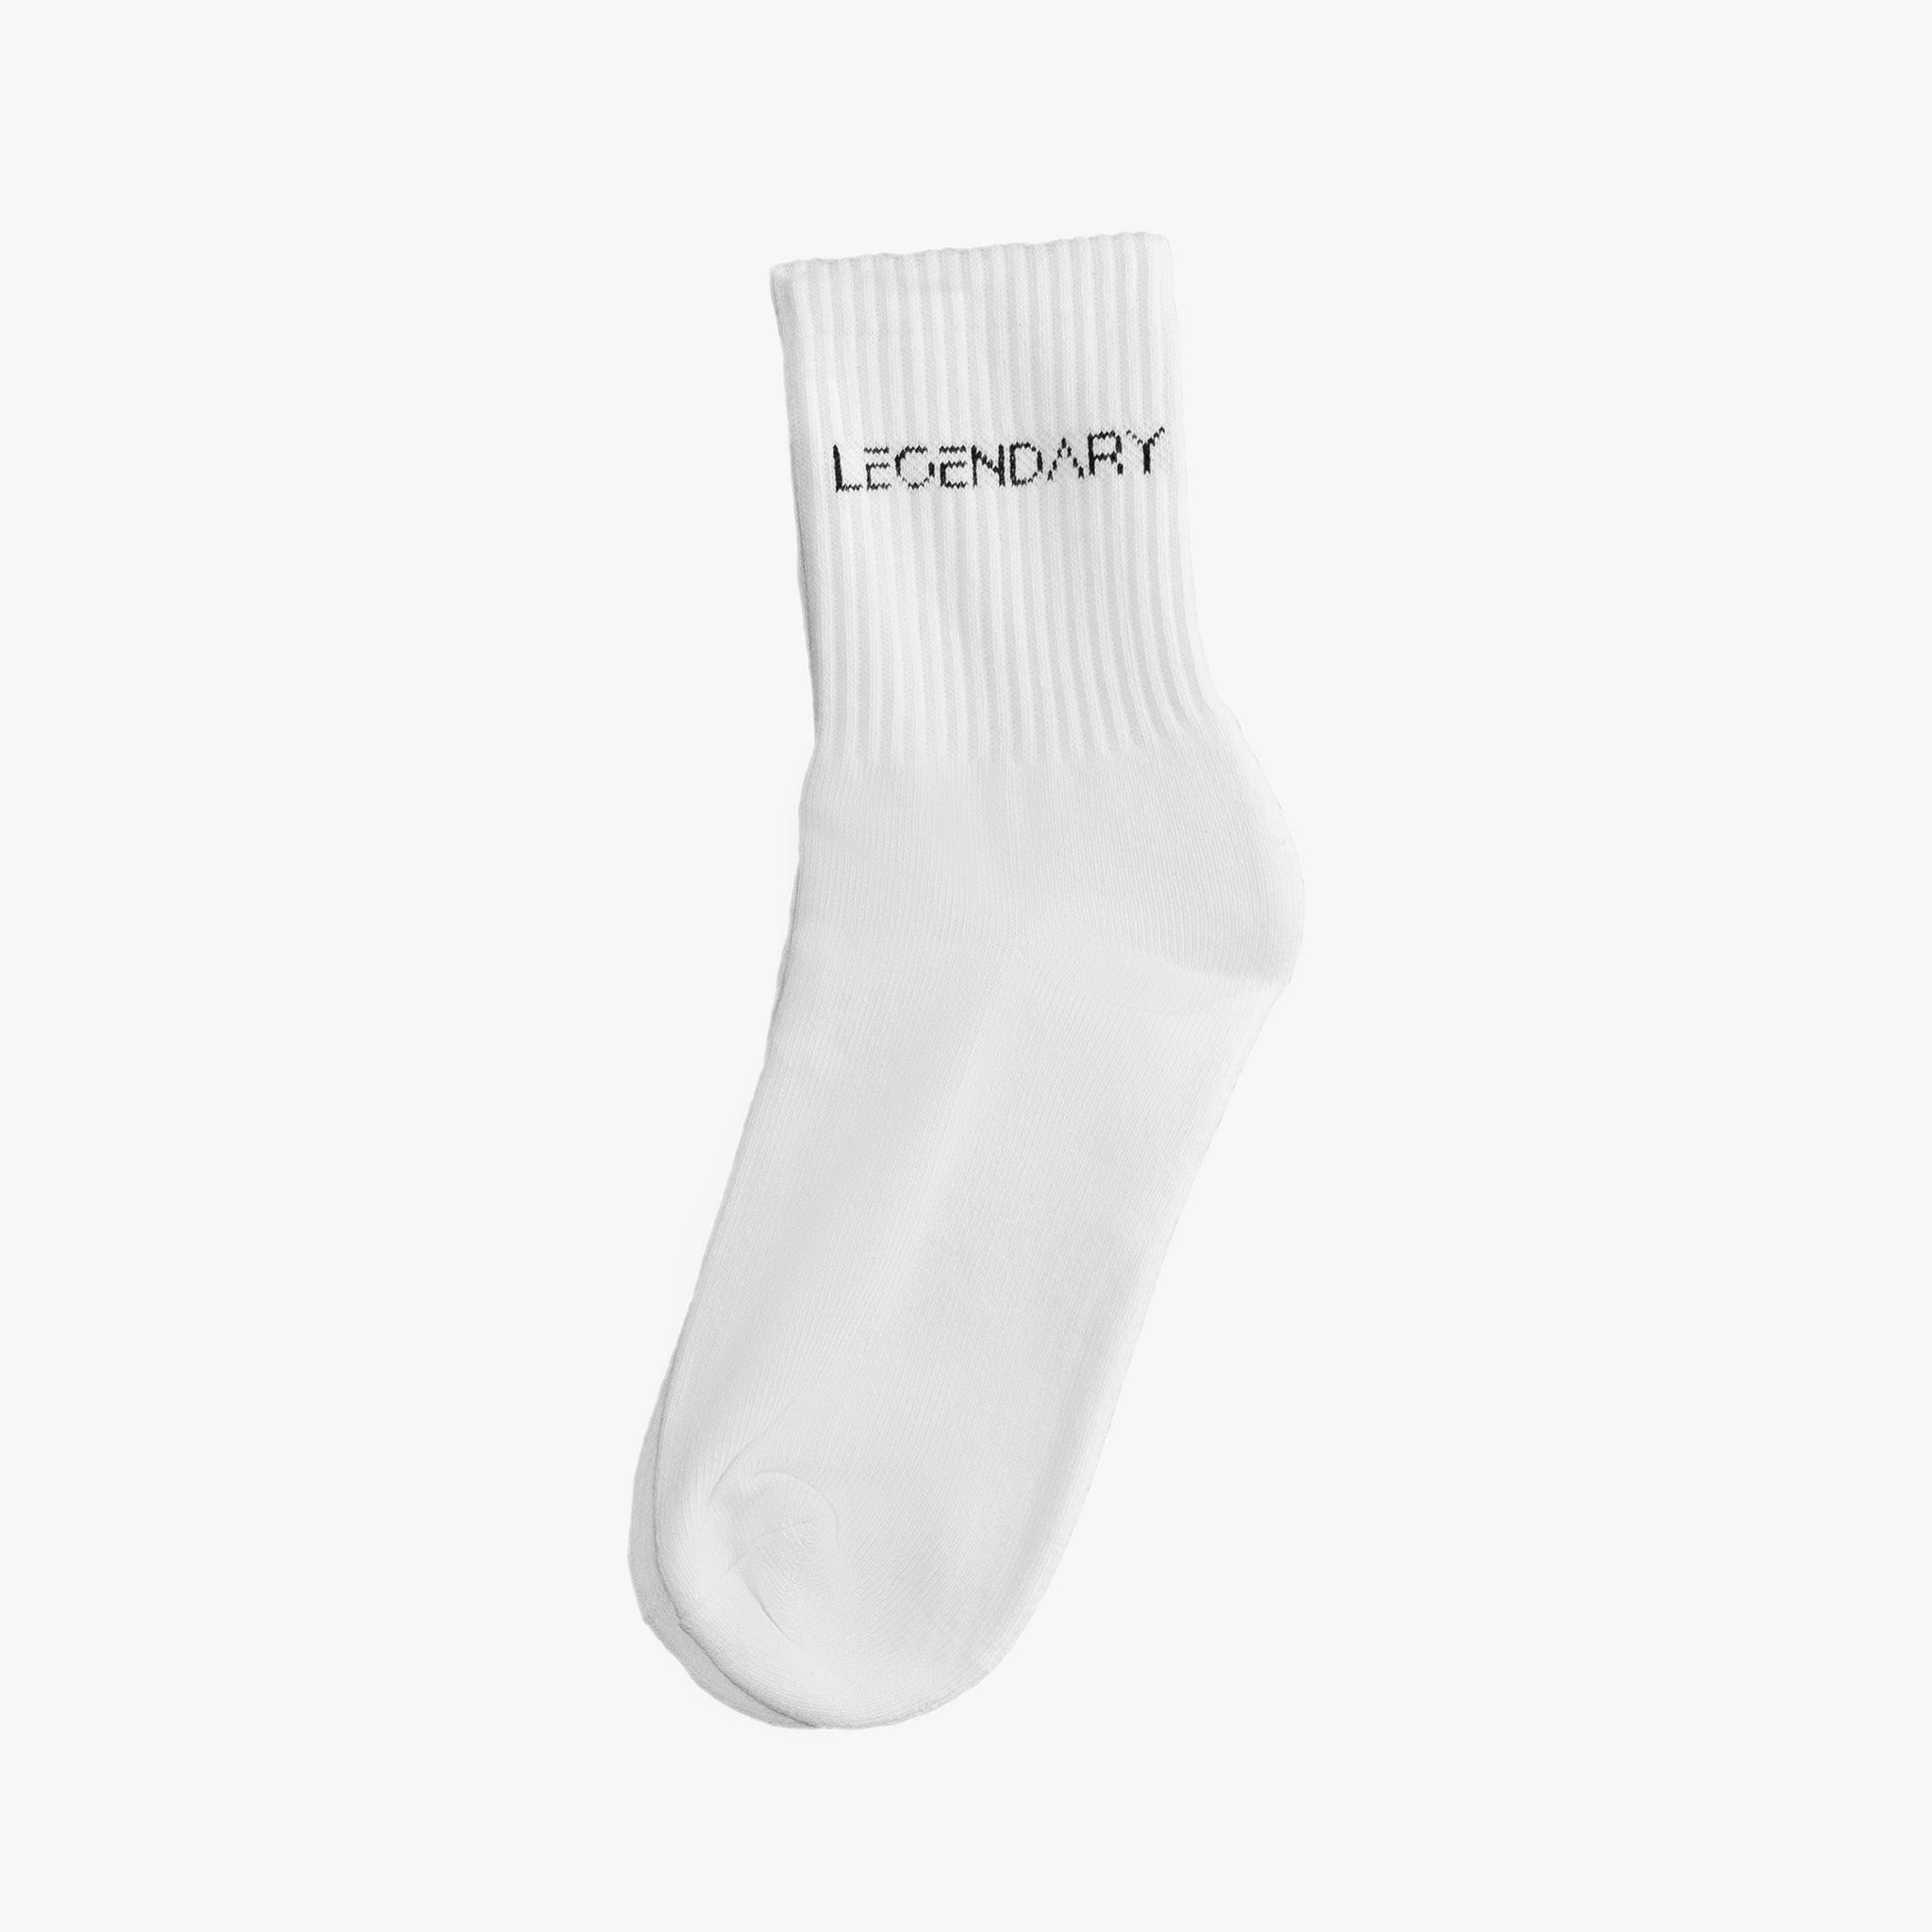 Legendary Socks White